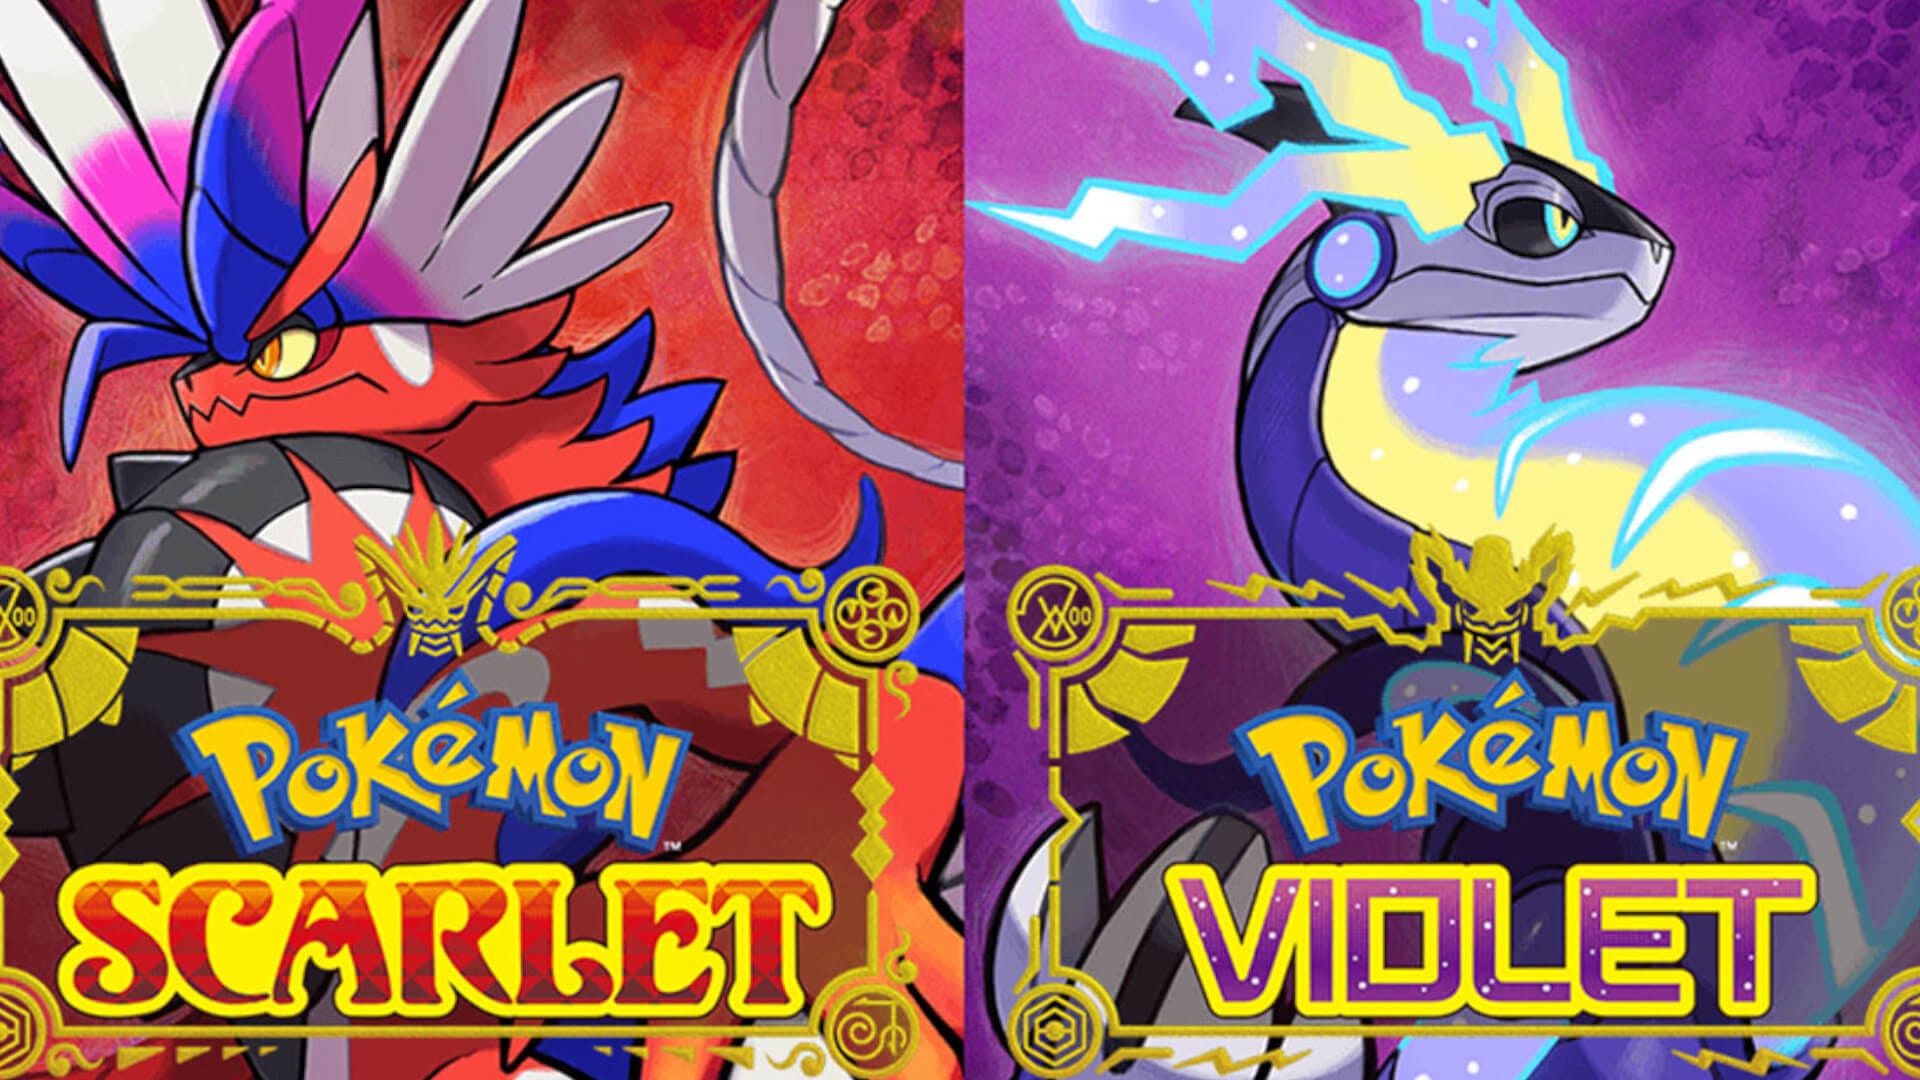 Latest Pokémon Scarlet & Violet leak reveals starter's evolution and more!